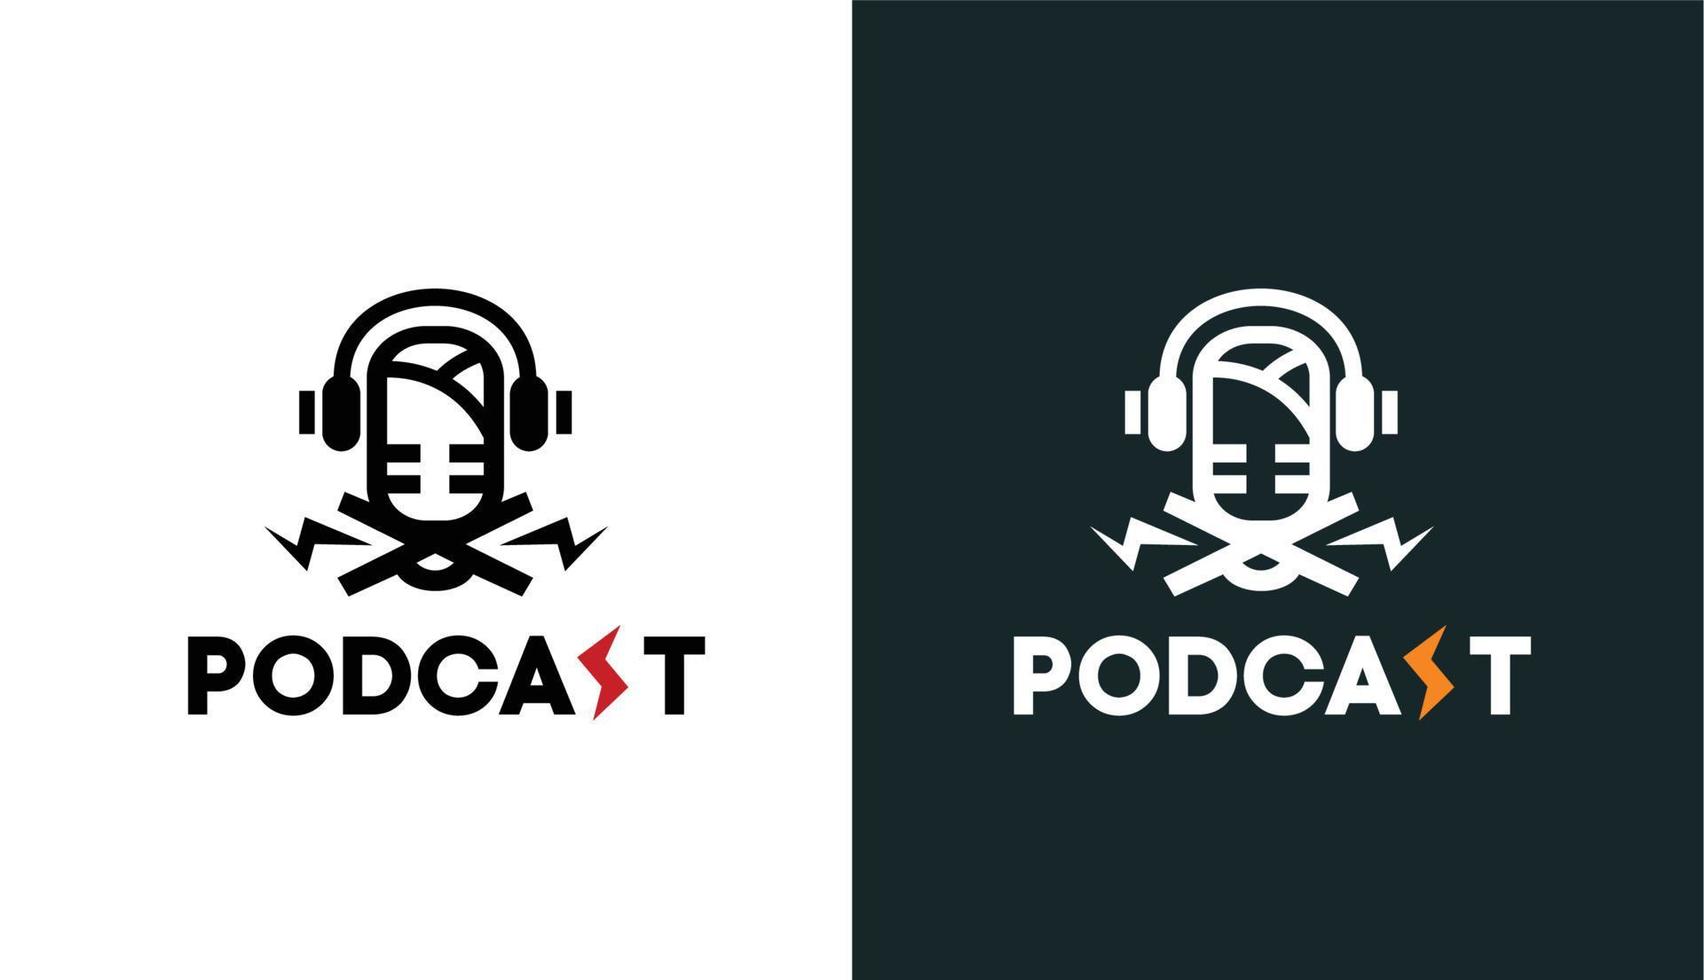 logo de podcast minimaliste avec éclaboussure d'électricité, logo simple pour la marque et l'entreprise vecteur